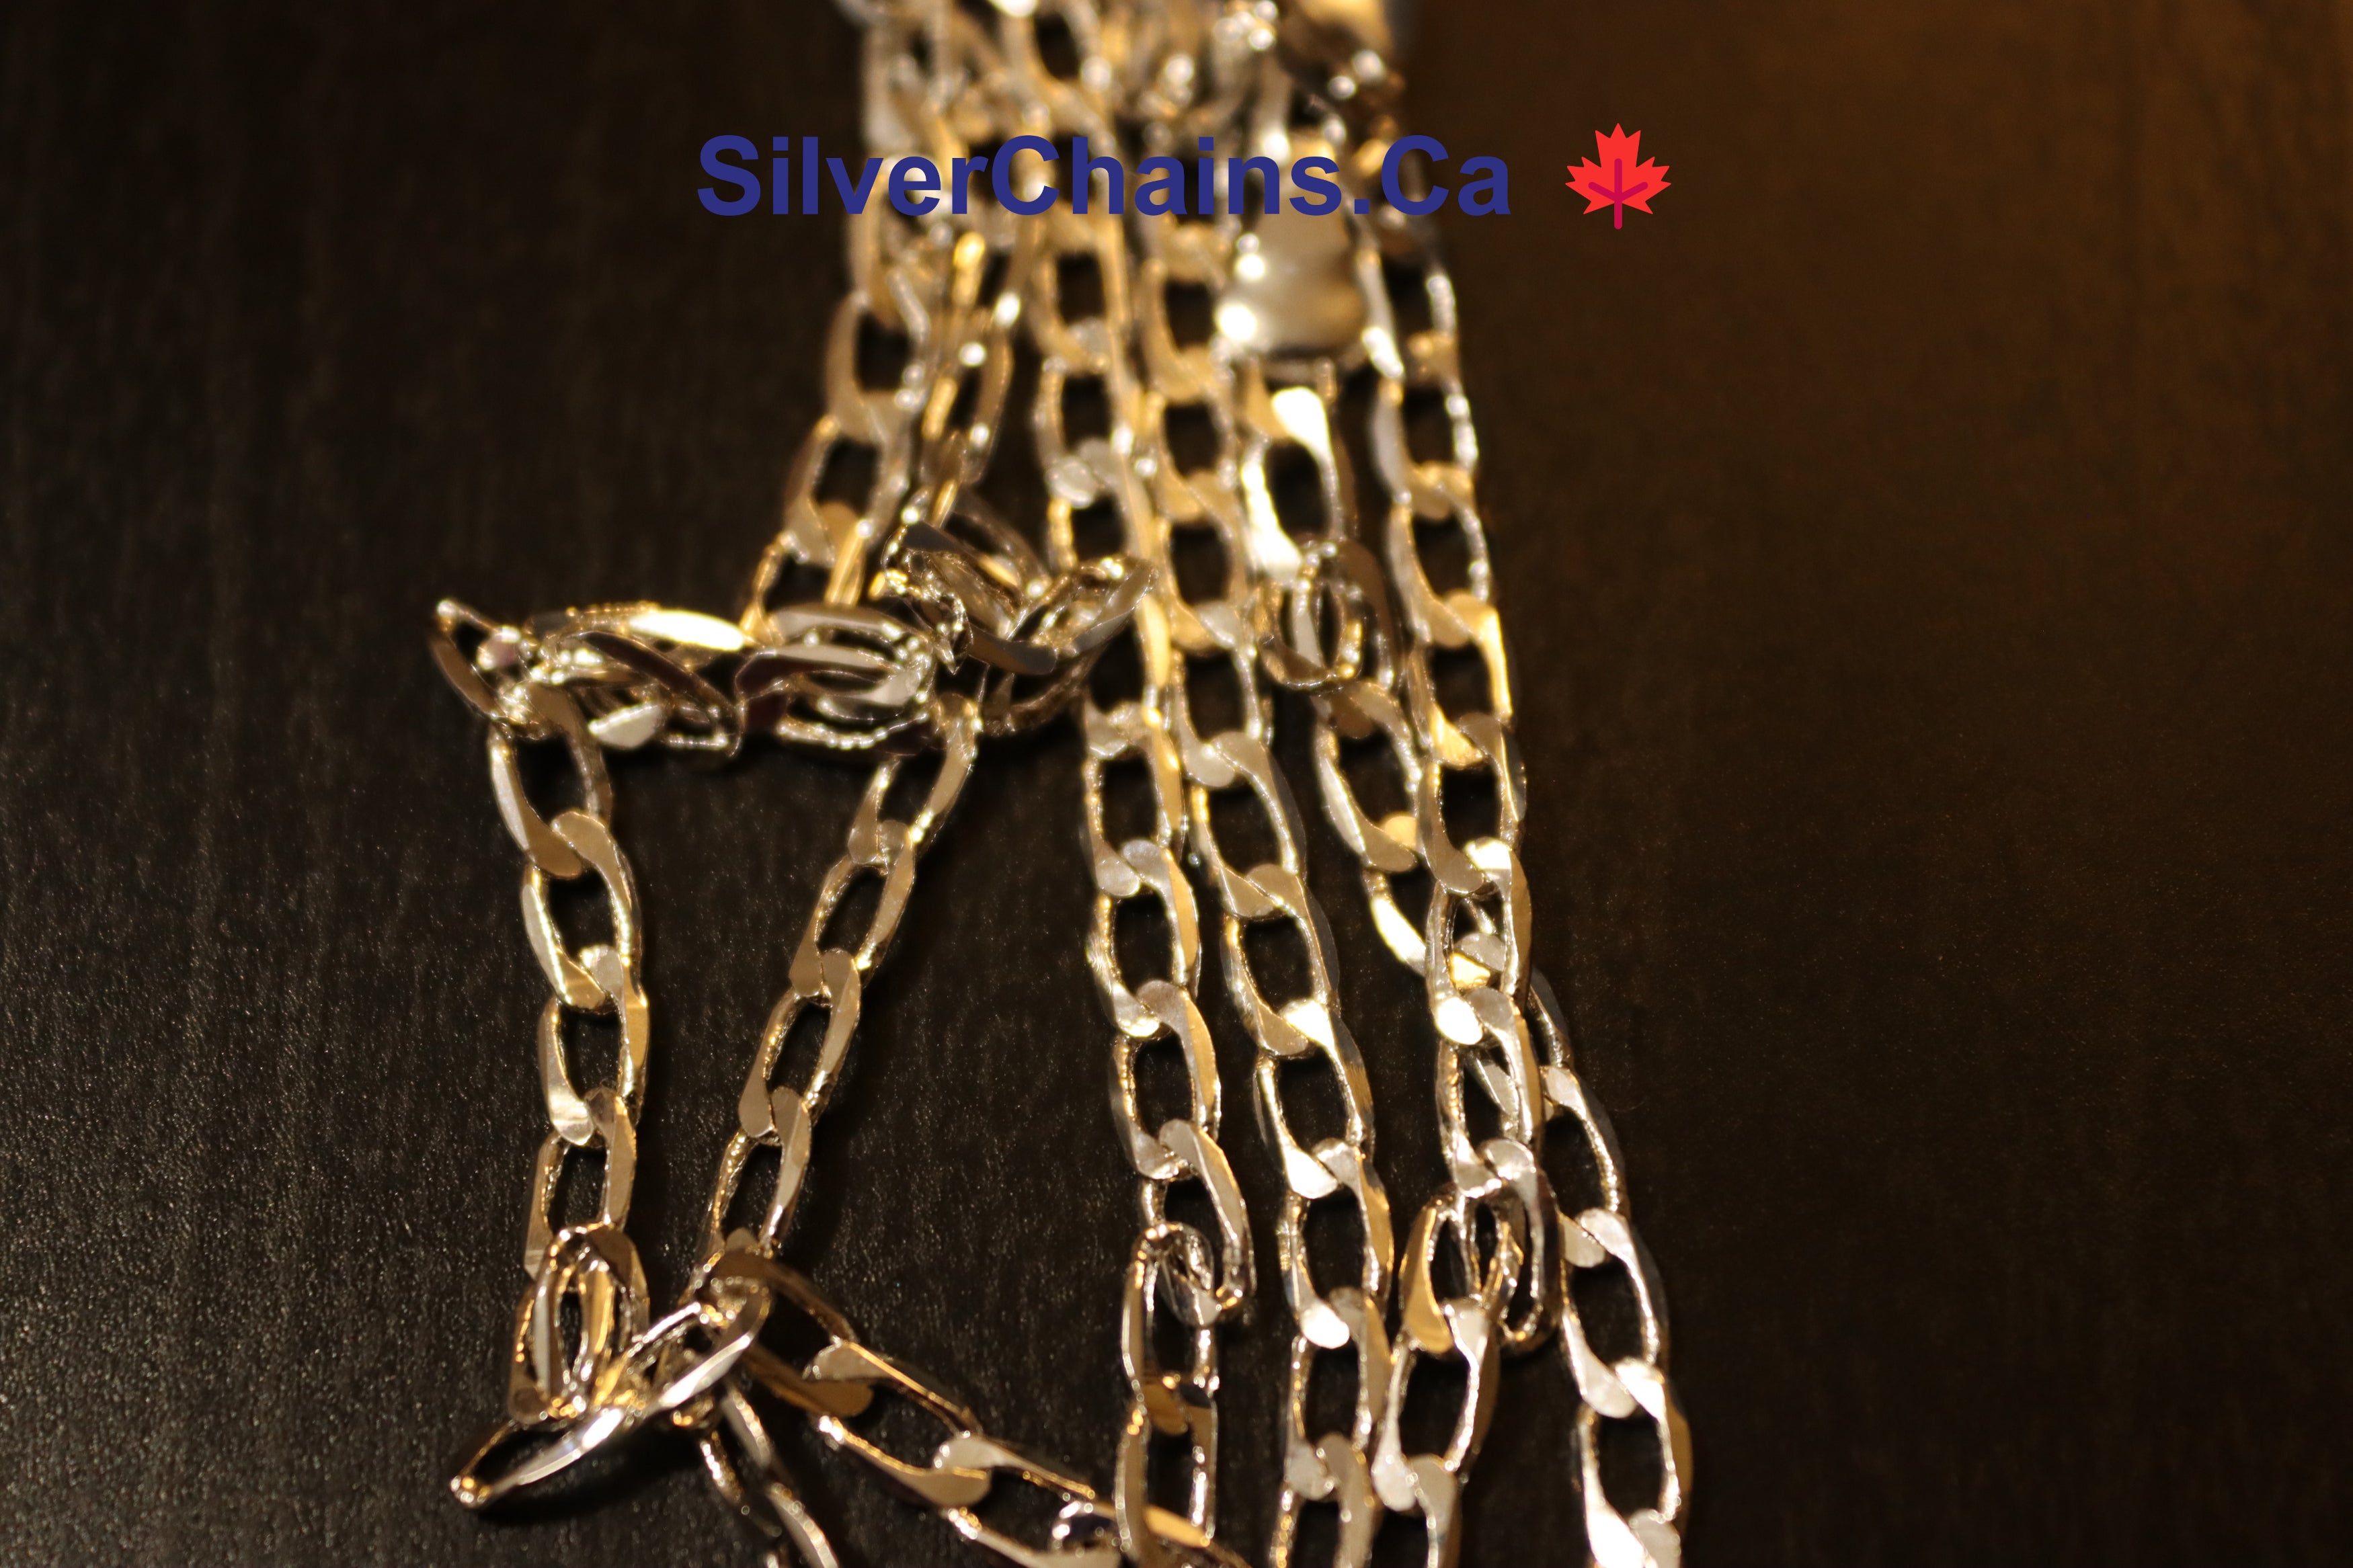 Figaro Classic Chain Necklace – PILGRIM